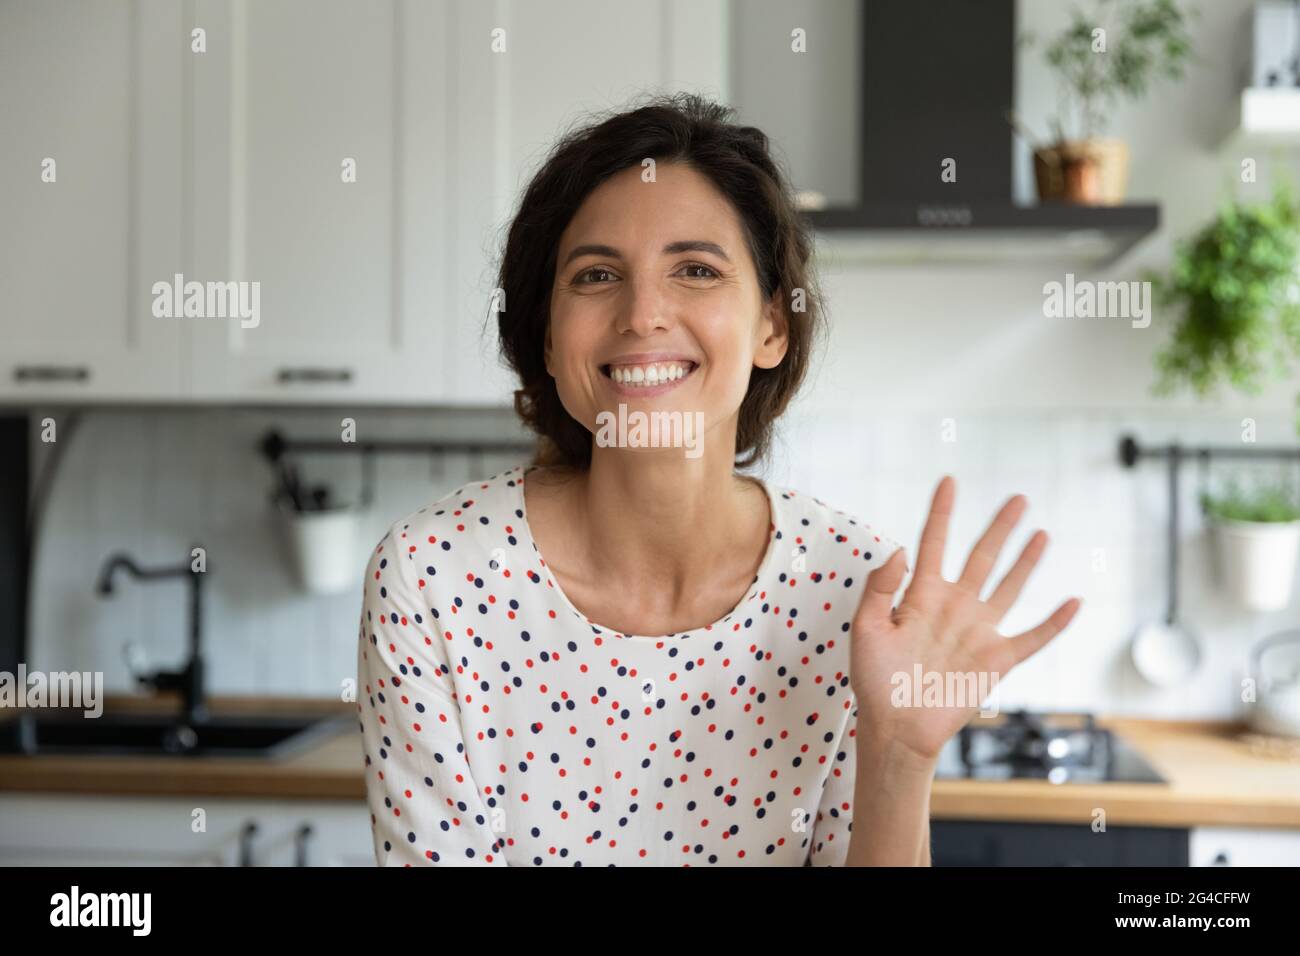 Porträt einer lächelnden Frau, die mit der Hand die Kamera anwinkt Stockfoto